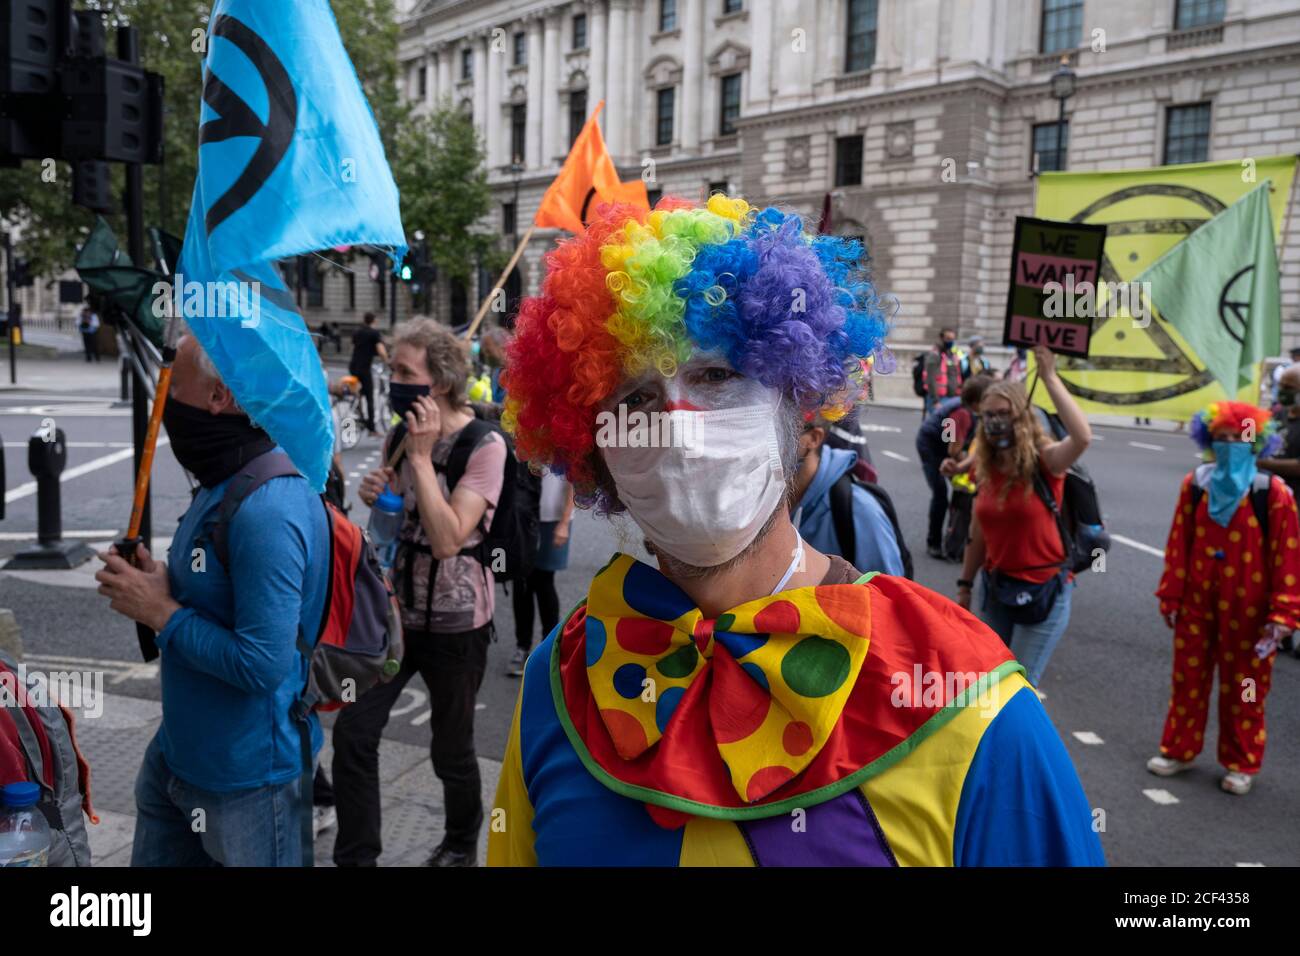 Clown-Protestler bei Extinction Rebellion Demonstration am 3. September 2020 in London, Großbritannien. Nachdem die Regierung nach der Sommerpause zurücktrat, hat die Klimaschutzgruppe zwei Wochen lang Veranstaltungen organisiert, Proteste und Störungen in der gesamten Hauptstadt. Extinction Rebellion ist eine 2018 gestartete Gruppe zum Klimawandel, die eine große Gruppe von Menschen gewonnen hat, die sich friedlichen Protesten verschrieben haben. Diese Proteste zeigen, dass die Regierung nicht genug tut, um katastrophale Klimaveränderungen zu vermeiden und die Regierung zu fordern, radikale Maßnahmen zur Rettung des Planeten zu ergreifen. Stockfoto